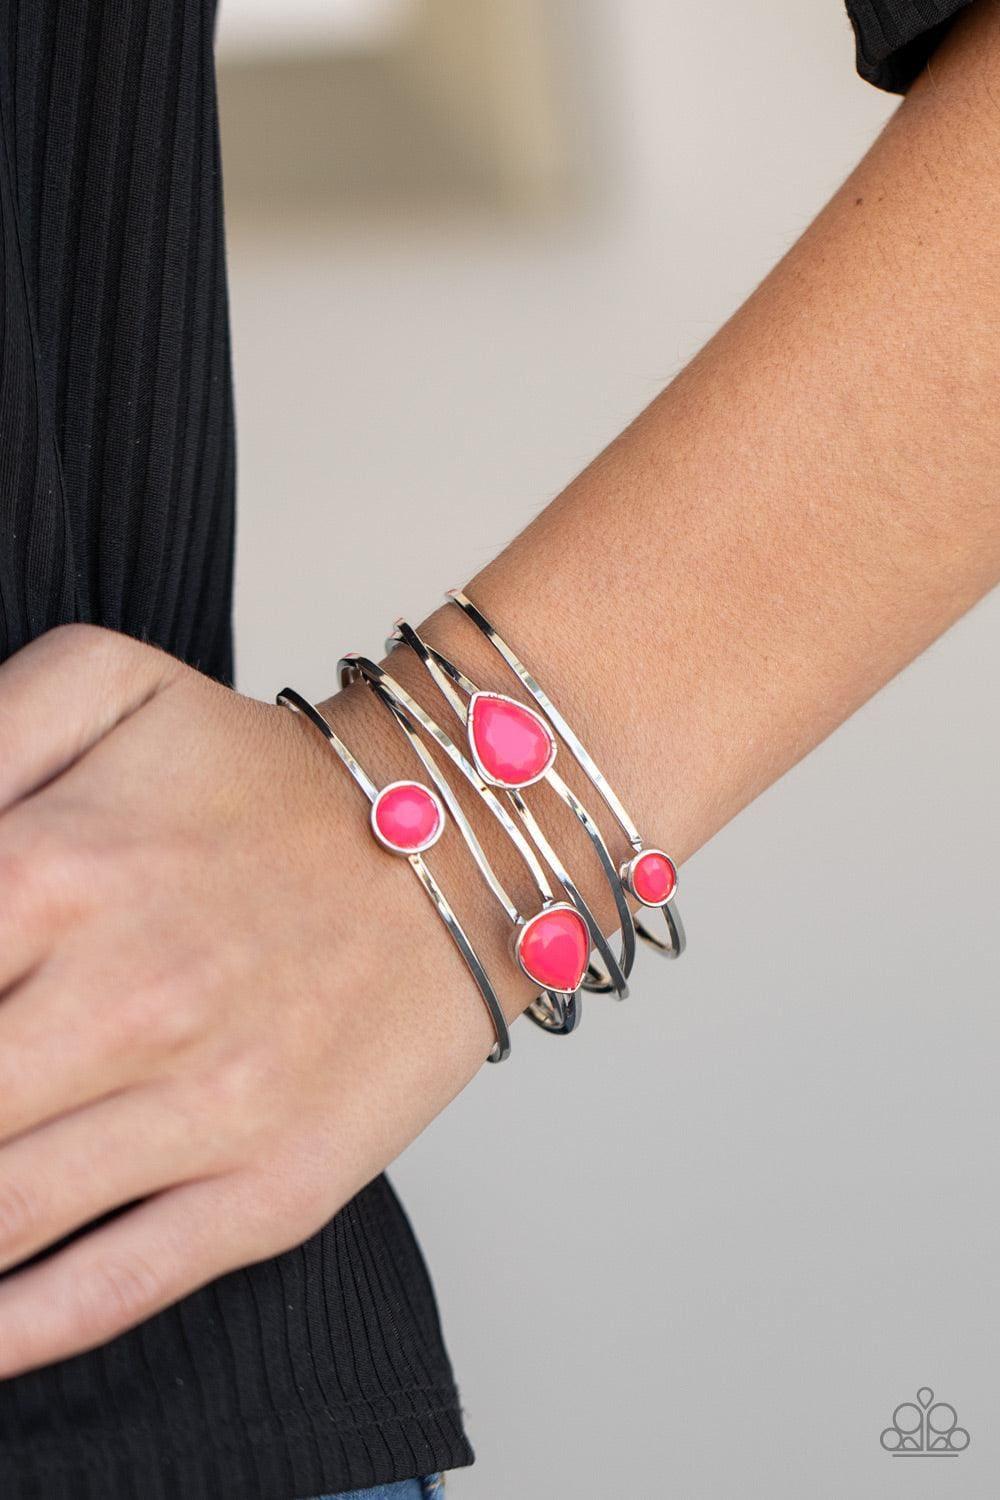 Paparazzi Accessories - Fashion Frenzy - Pink Bracelet - Bling by JessieK